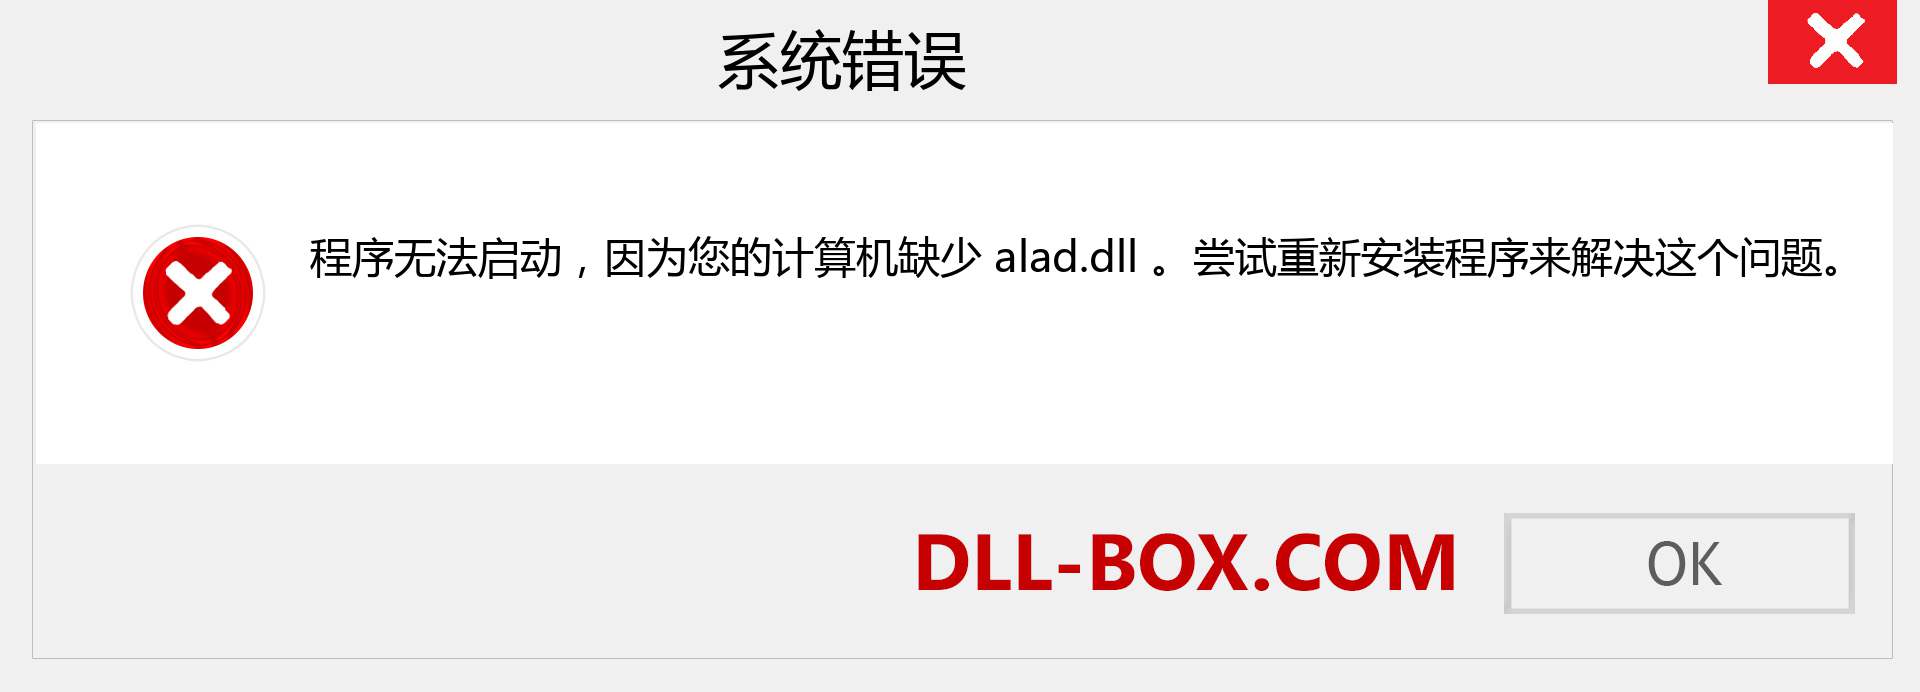 alad.dll 文件丢失？。 适用于 Windows 7、8、10 的下载 - 修复 Windows、照片、图像上的 alad dll 丢失错误